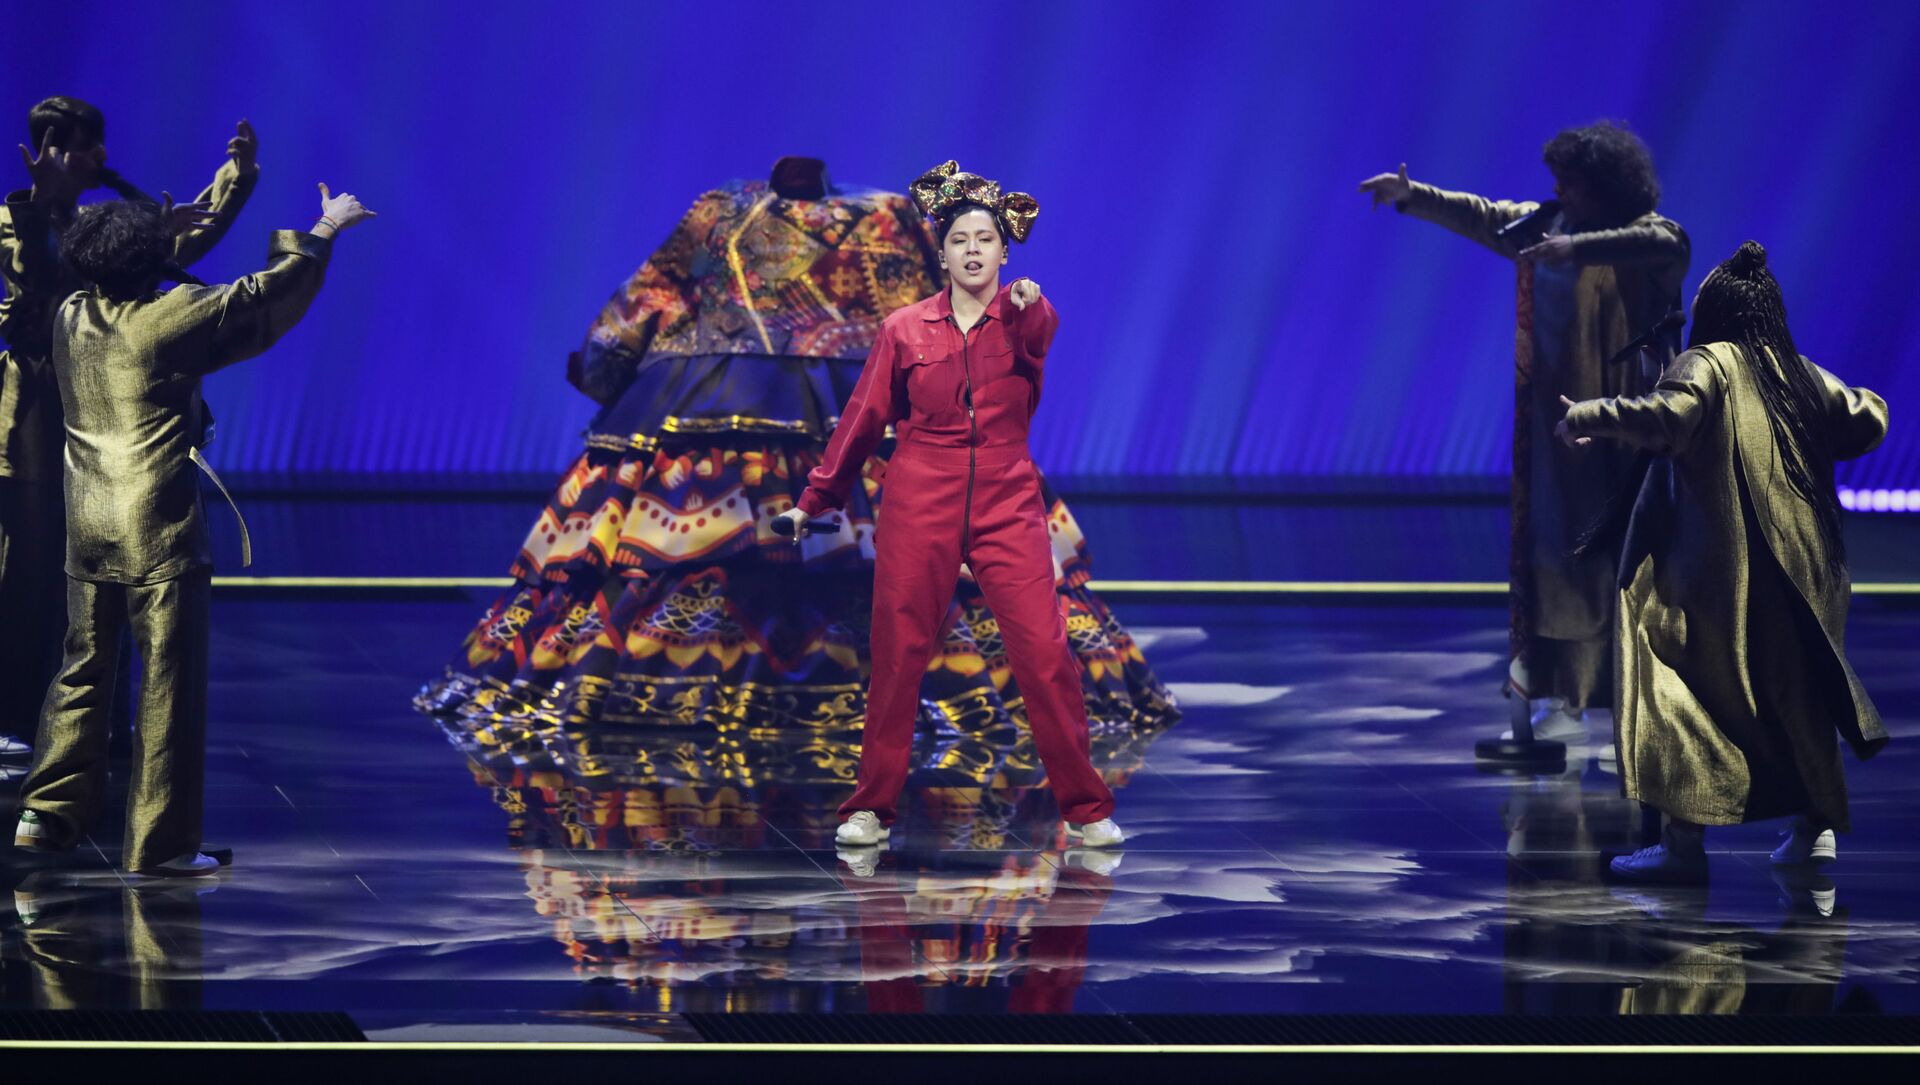 Певица Манижа (Россия) выступает в первом полуфинале конкурса песни Евровидение-2021 в Роттердаме - Sputnik Азербайджан, 1920, 20.05.2021